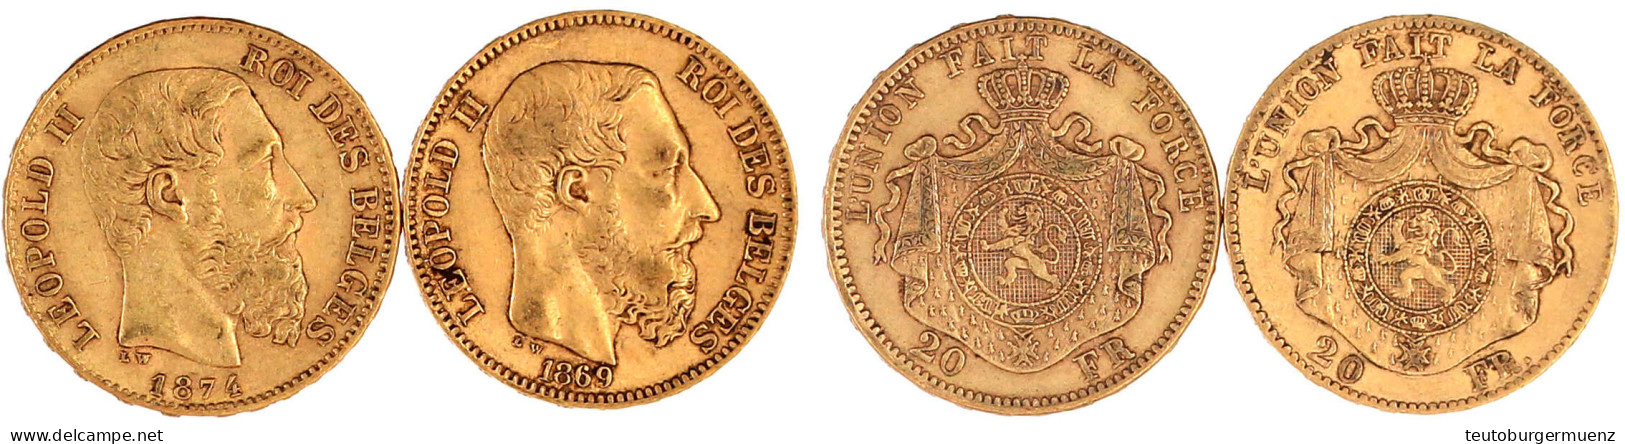 2 X 20 Francs: 1869 Und 1974. Je 6,45 G. 900/1000. Sehr Schön. Krause/Mishler 32. - 20 Francs (or)